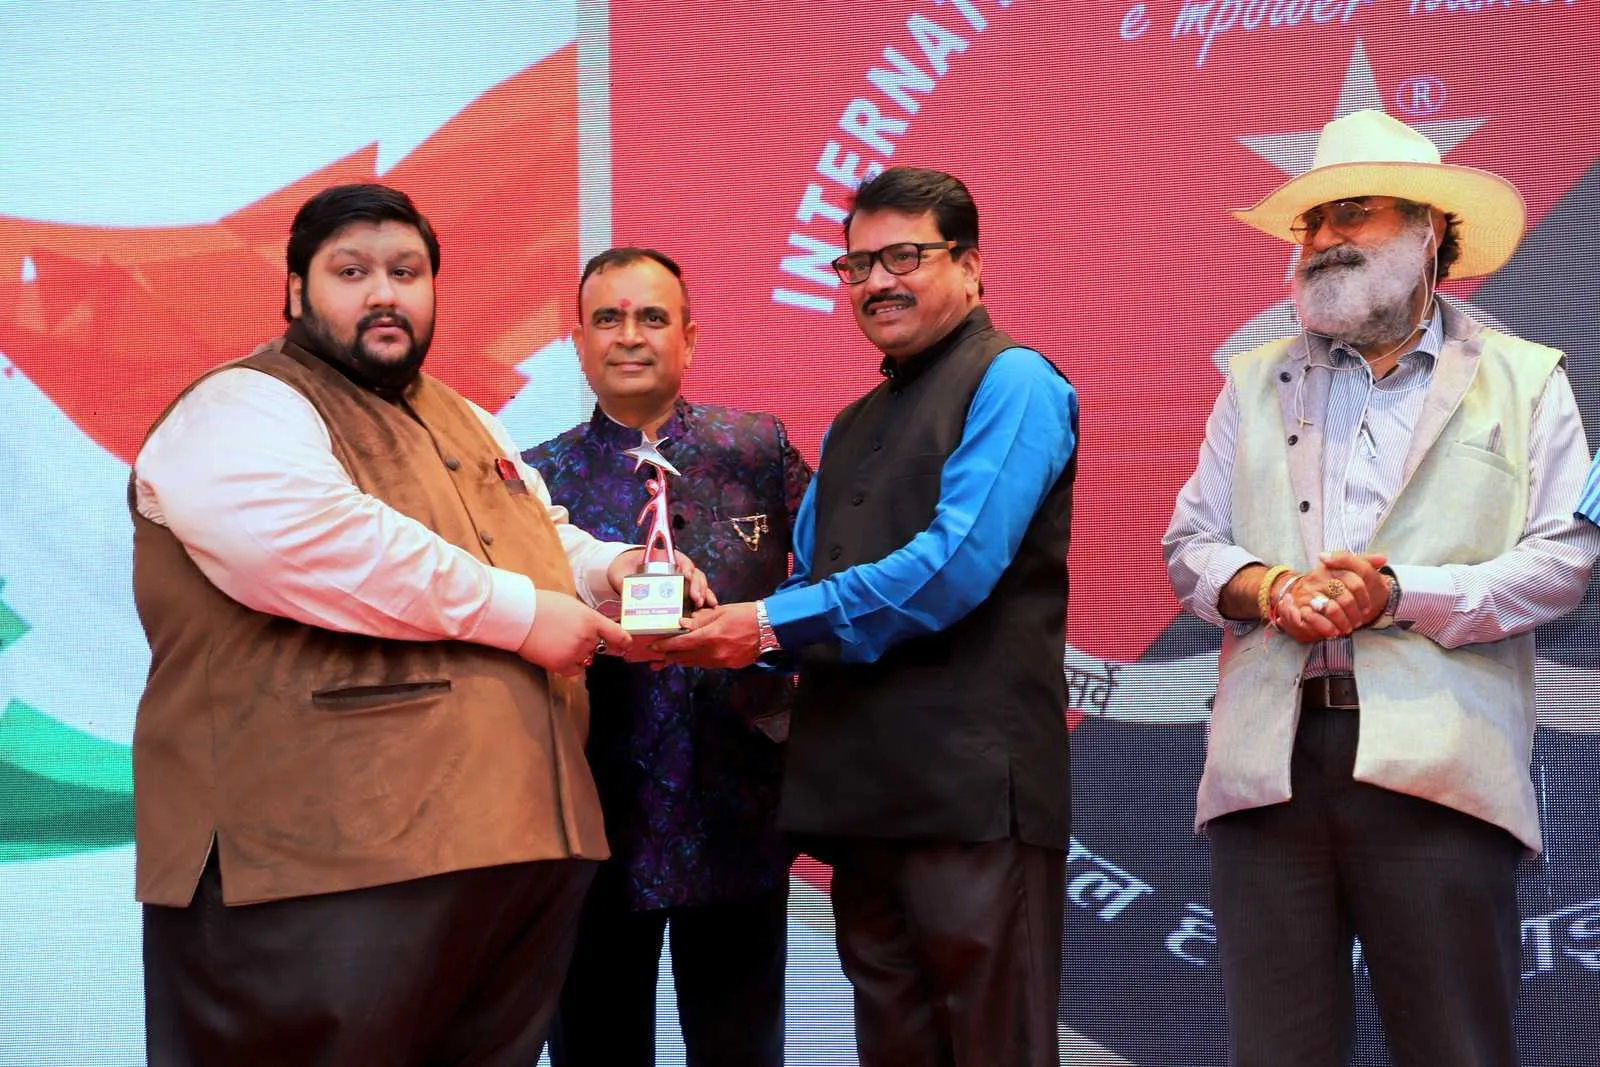 मनोज नाथवानी निर्देशक, जीत उपेंद्र को फिल्म बेटियों की बल्ले बल्ले के लिये डॉ बाबासाहेब अम्बेडकर नोबेल पुरस्कार से सन्मानित किया गया